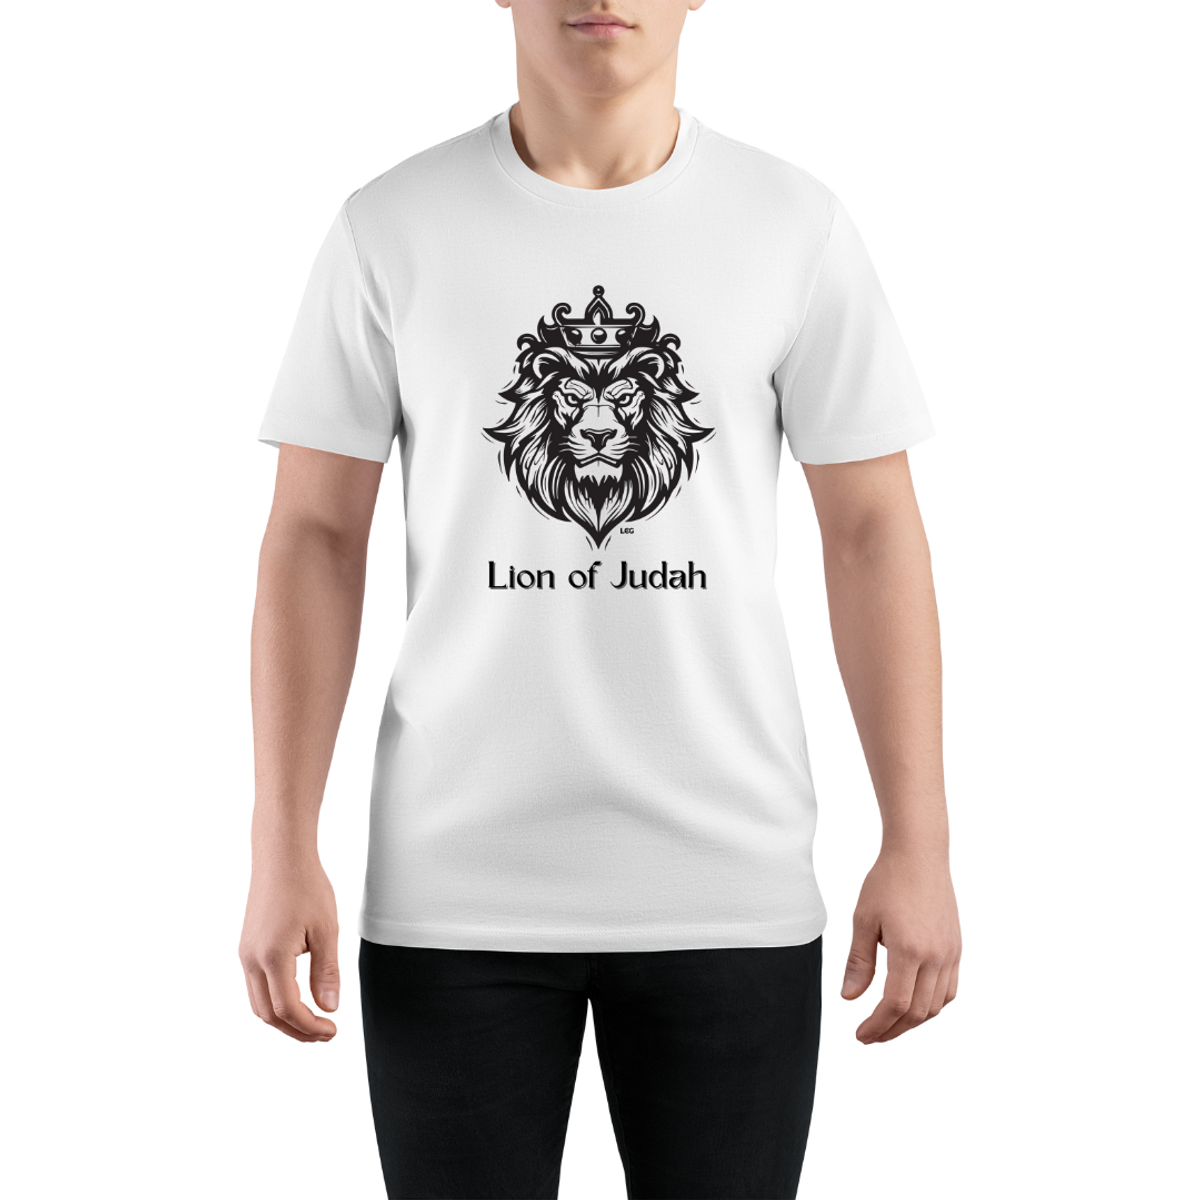 Nome do produto: Camiseta Lion of Judah